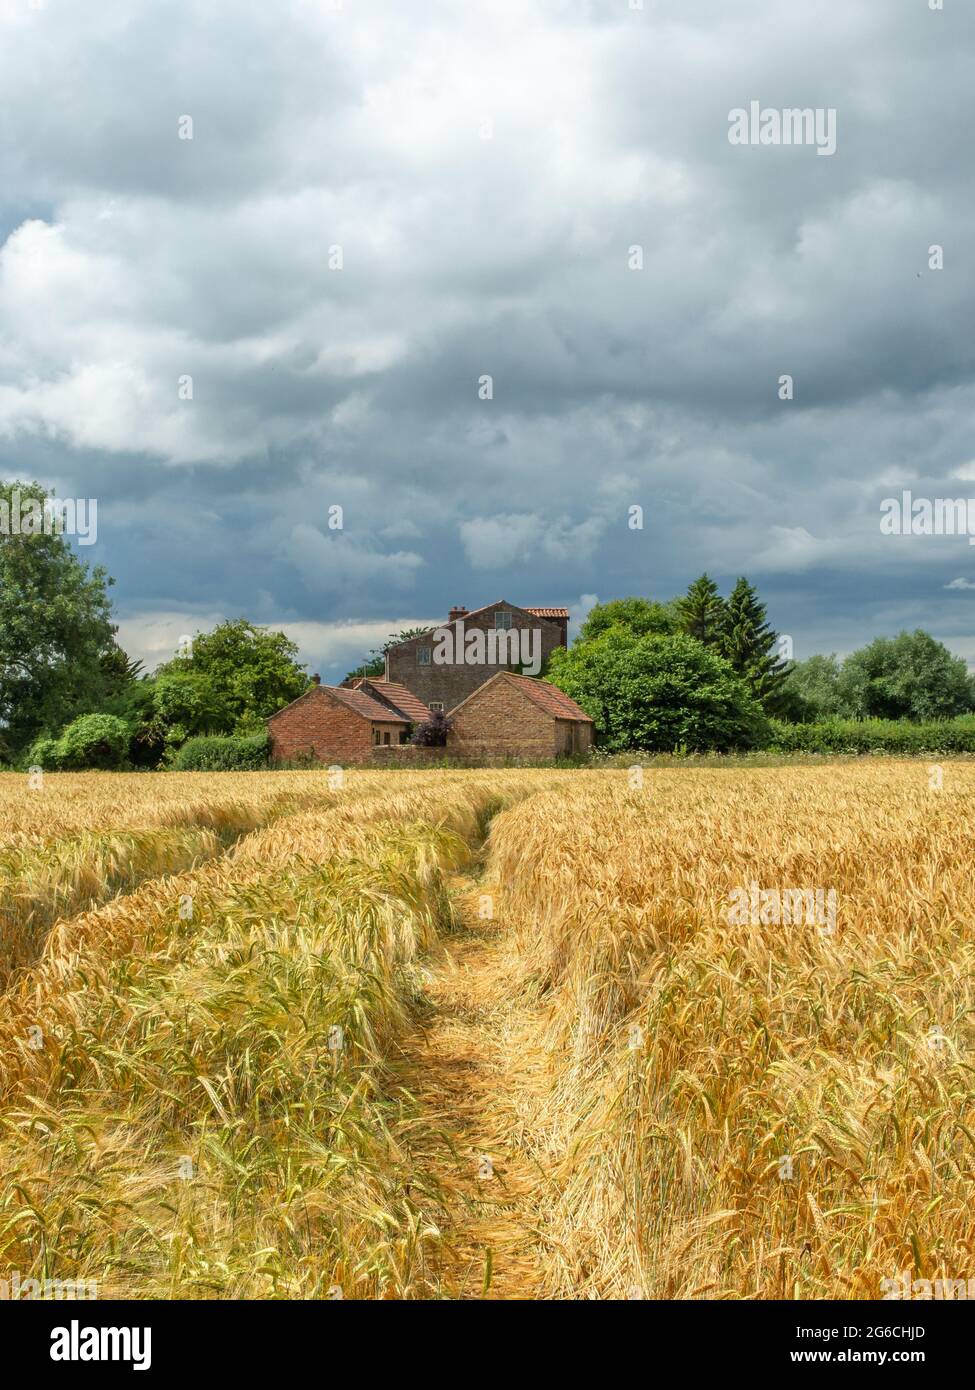 Veew attraverso un campo di grano giallo o orzo ad un vecchio mulino di mattoni rossi in lontananza in una giornata di sole. Foto Stock